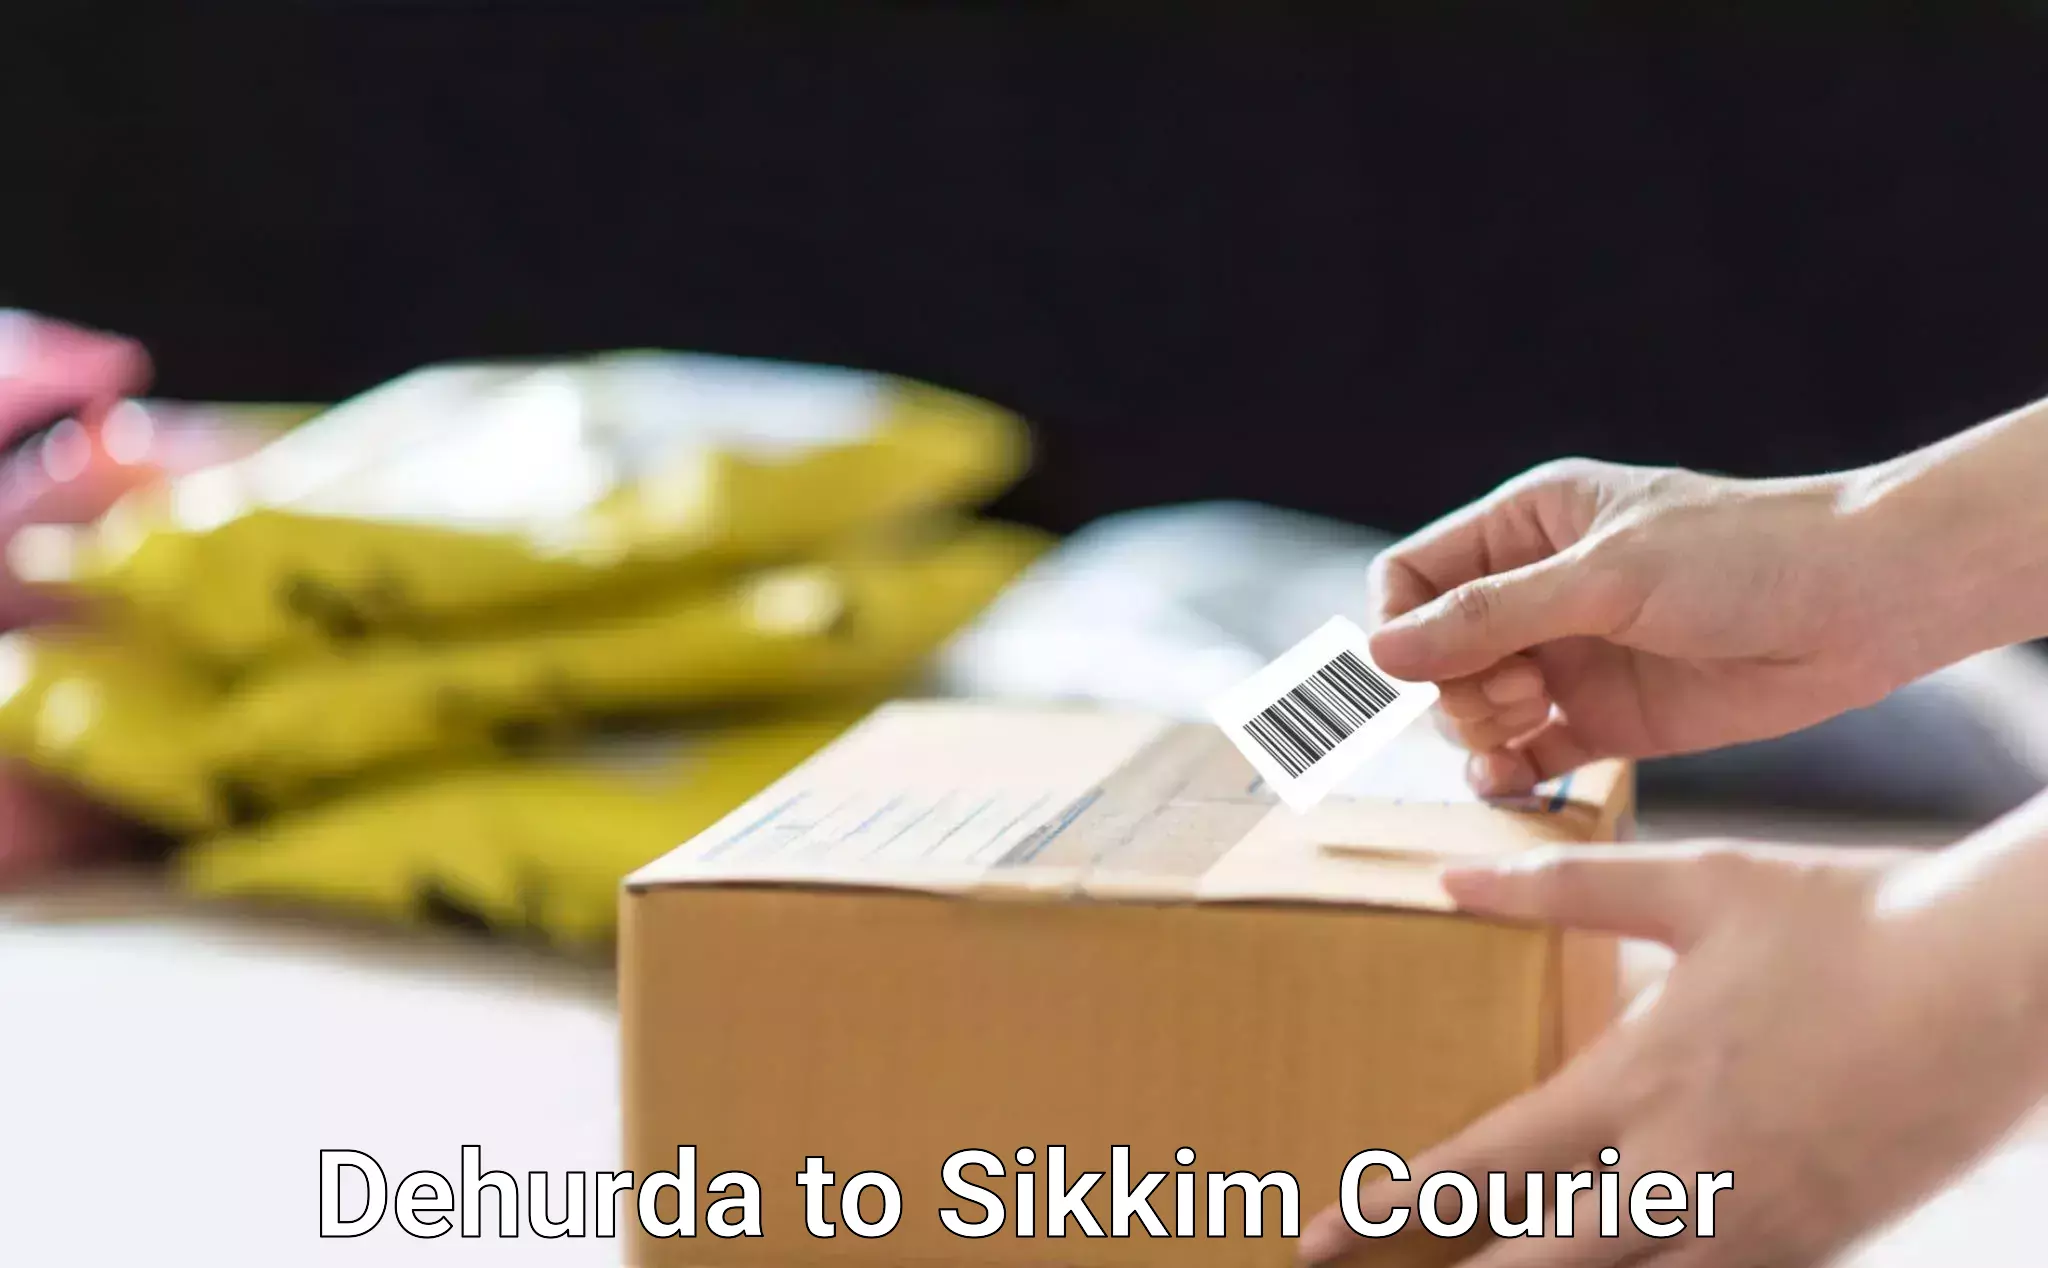 Digital shipping tools in Dehurda to Sikkim